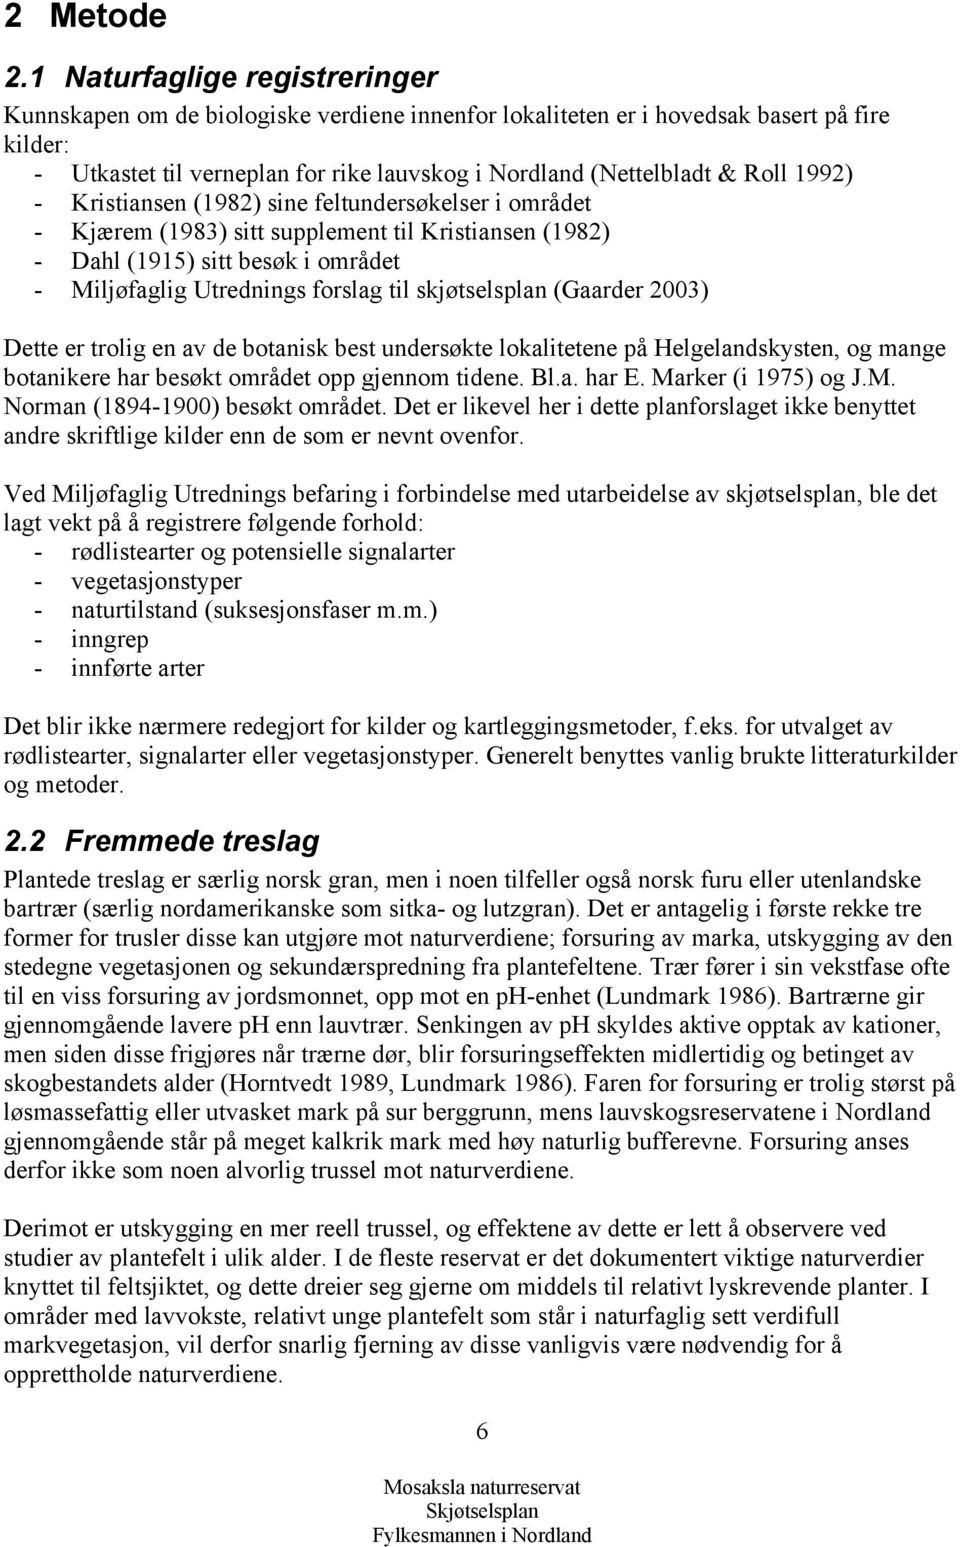 1992) - Kristiansen (1982) sine feltundersøkelser i området - Kjærem (1983) sitt supplement til Kristiansen (1982) - Dahl (1915) sitt besøk i området - Miljøfaglig Utrednings forslag til